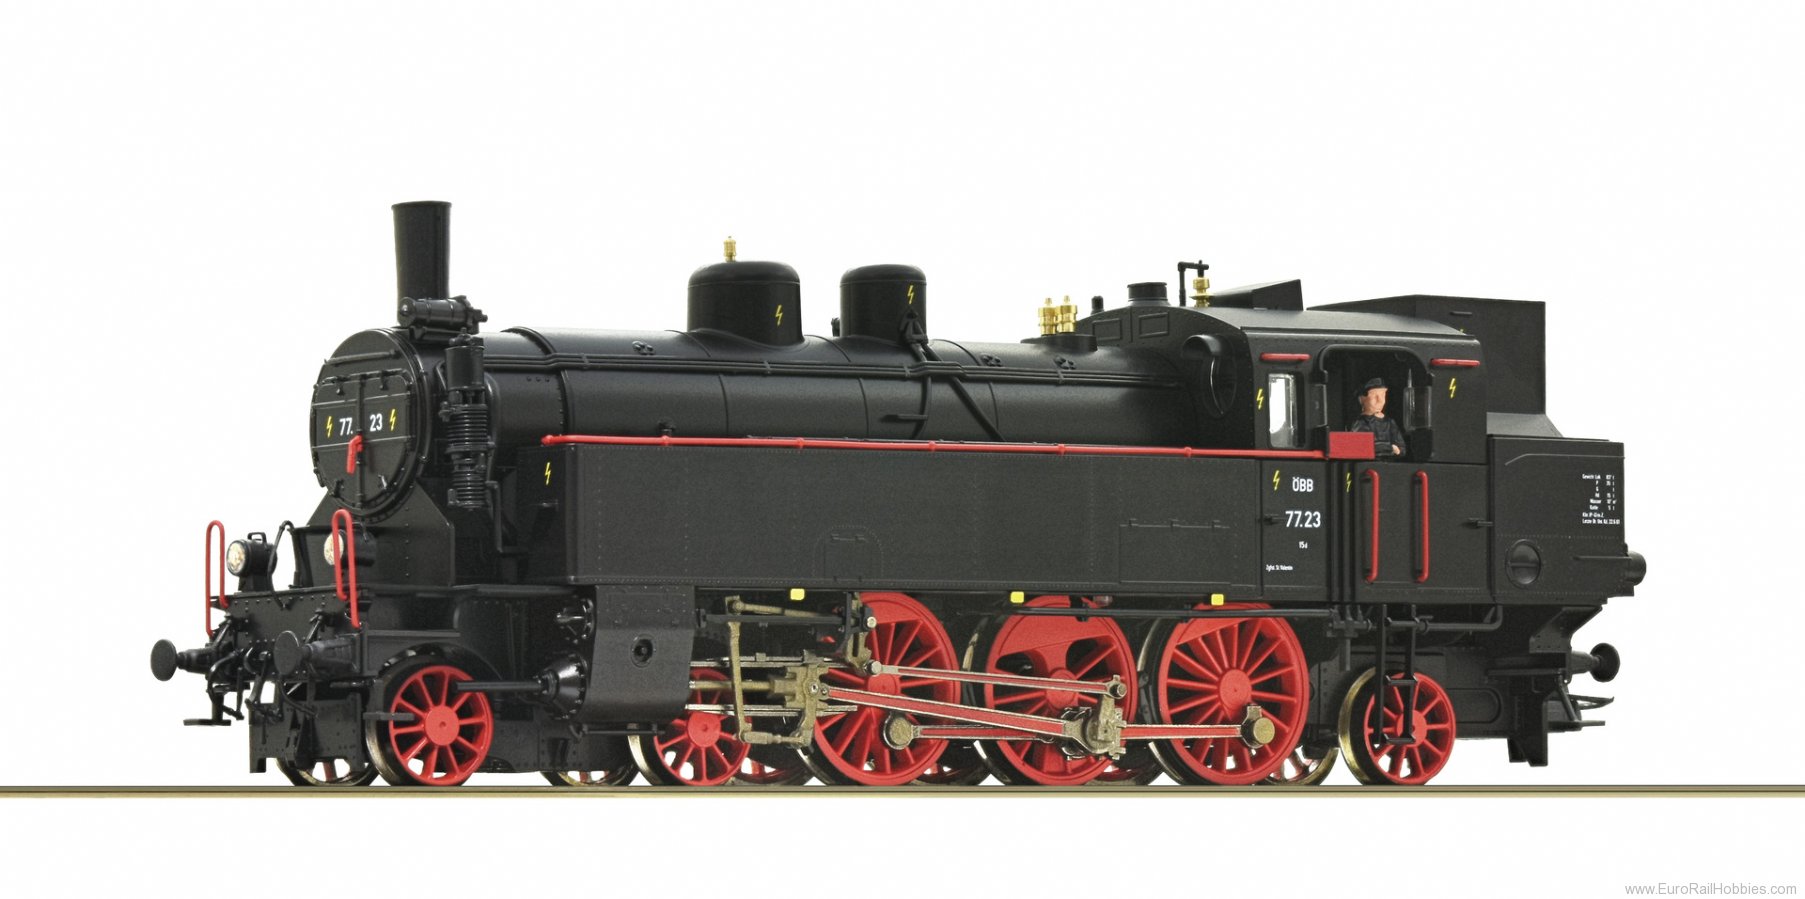 Roco 70076 OBB Steam locomotive 77.23, DCC w/Sound